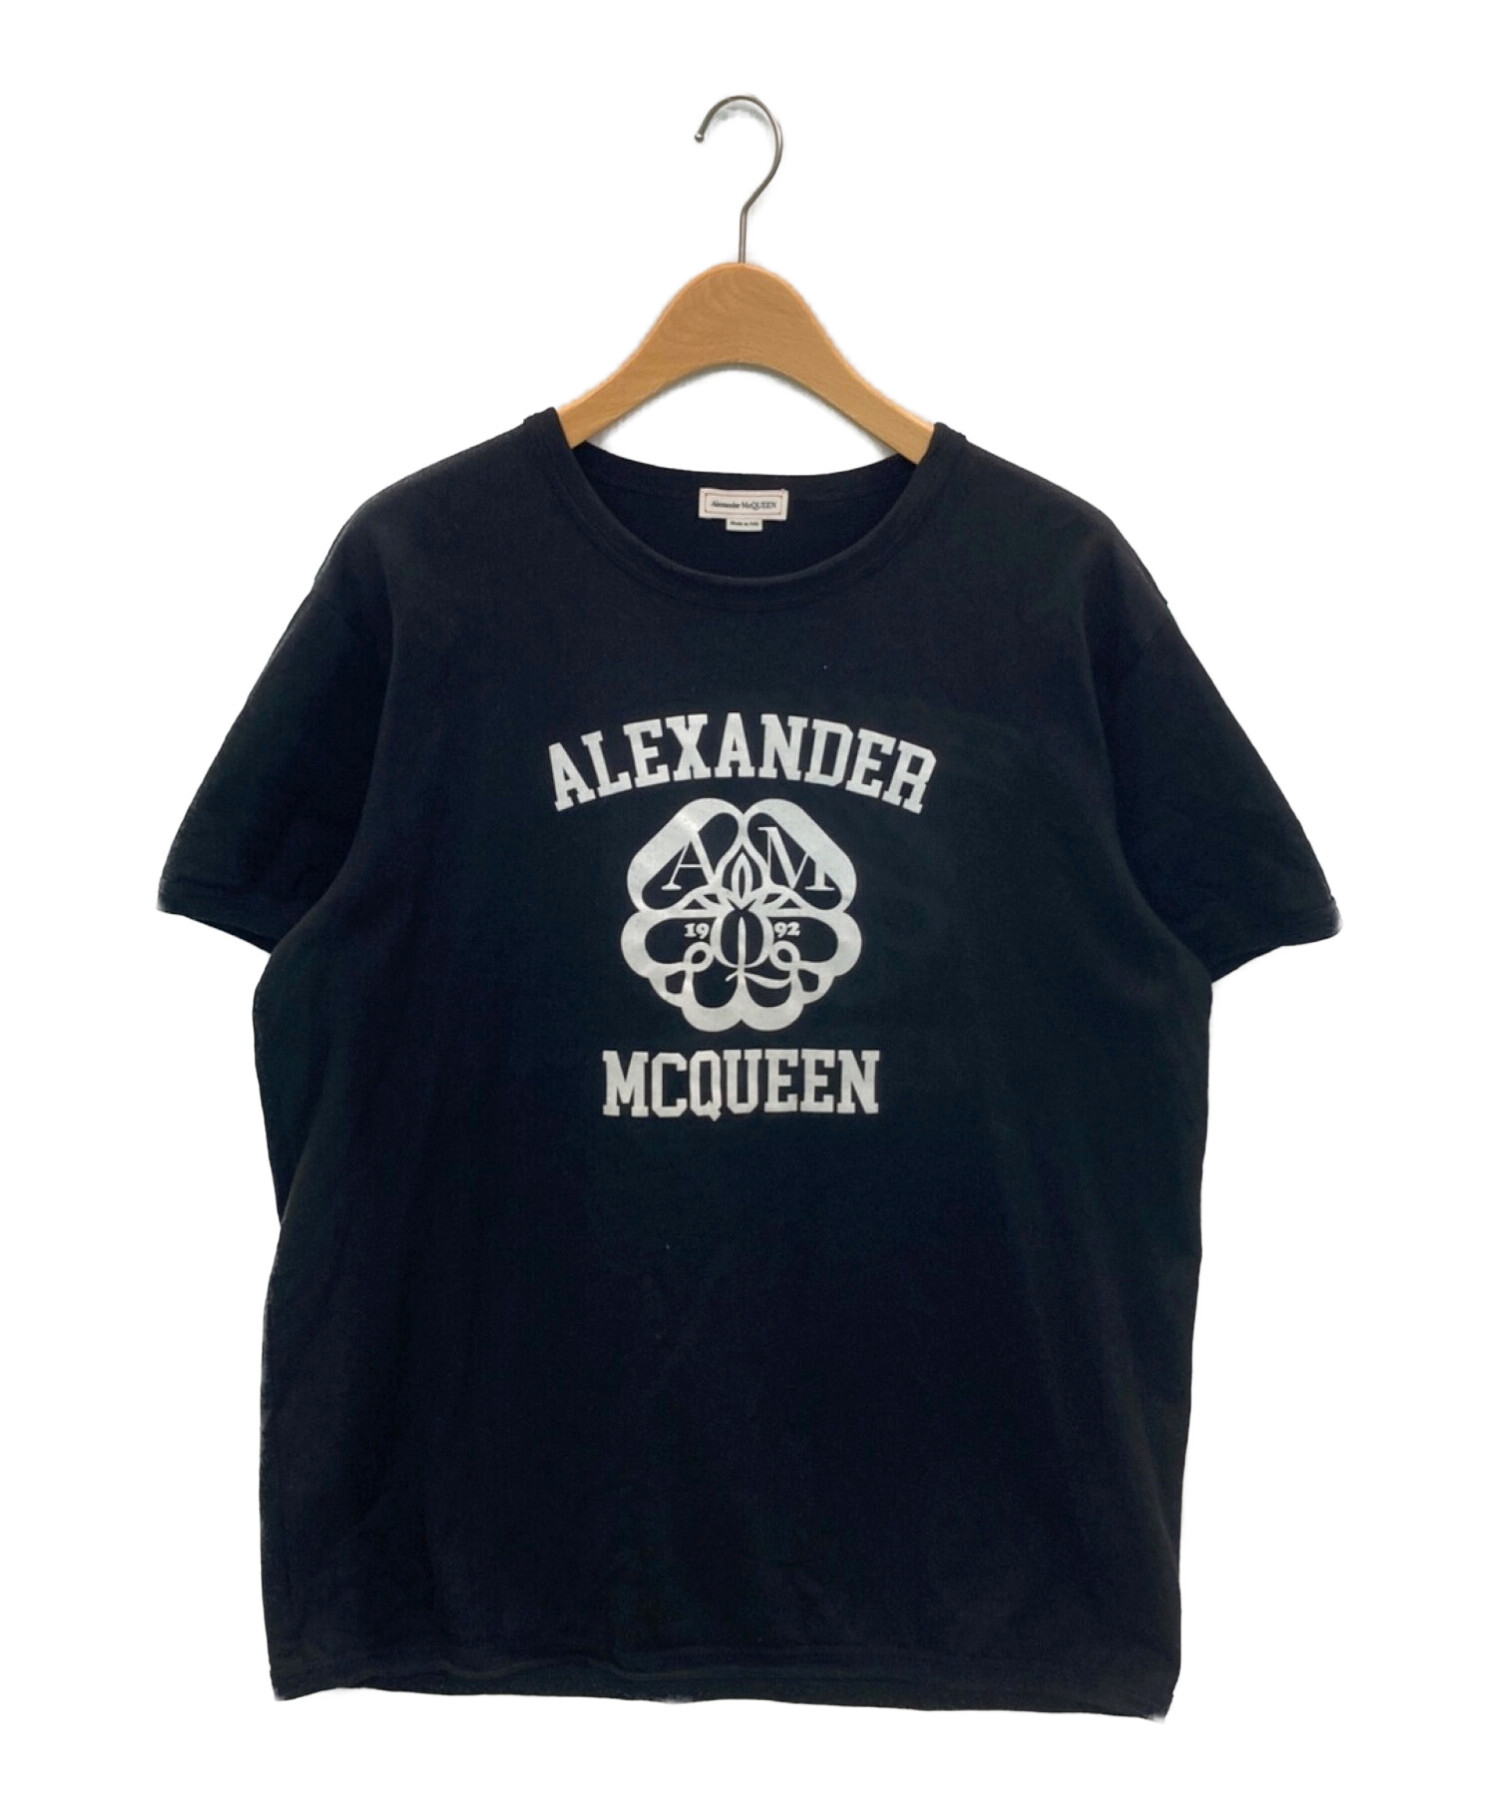 15,480円ALEXANDER McQUEEN アレキサンダーマックイーン シャツ ロゴ